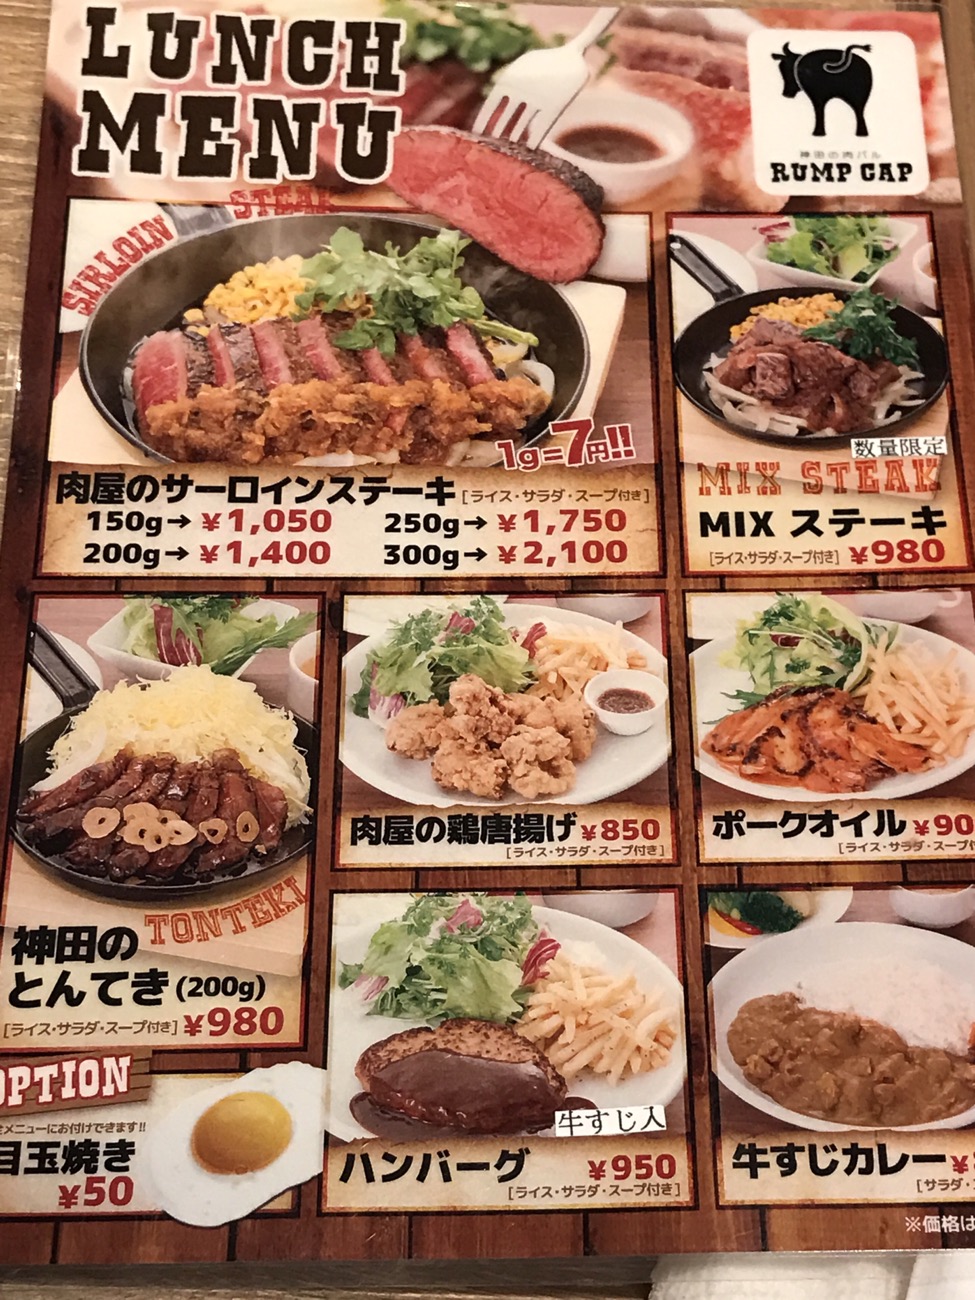 神田の肉バルランプキャップ ランチメニュー